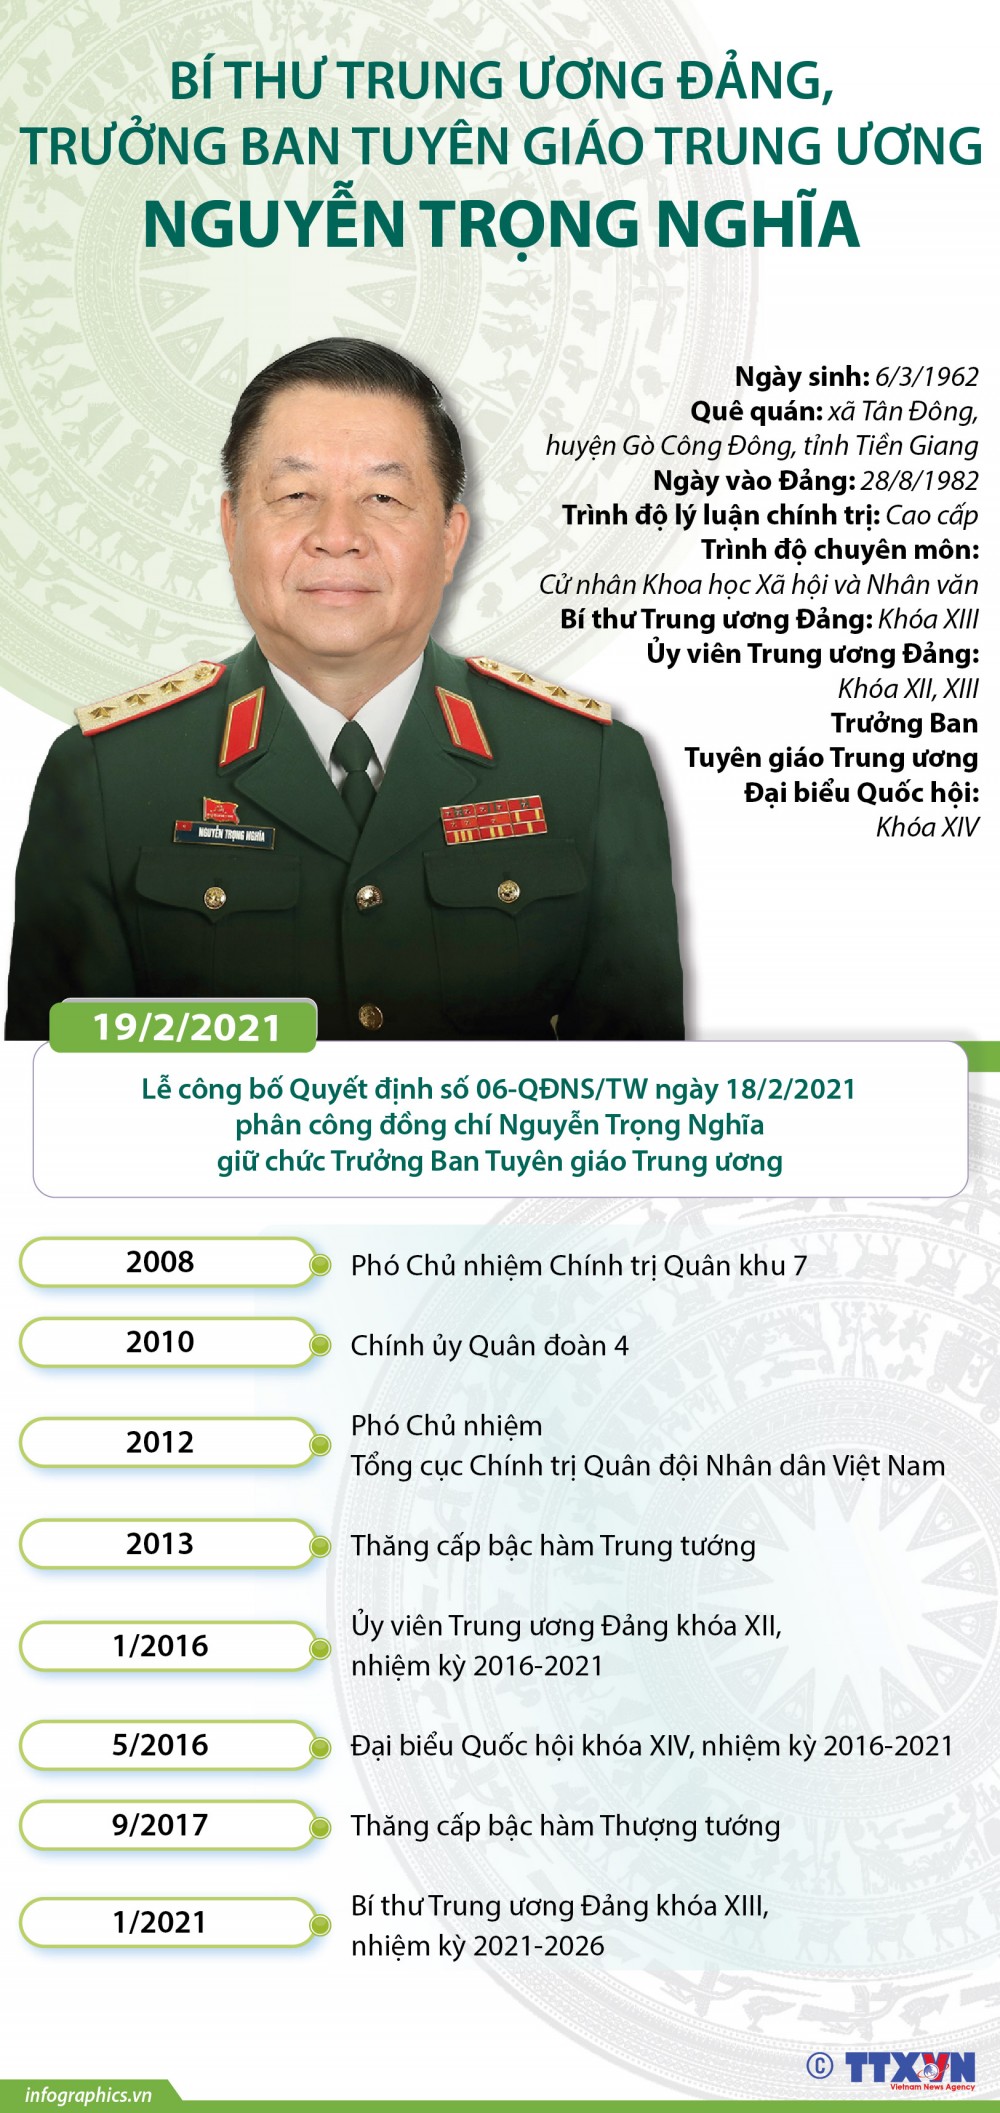 Chân dung Bí thư Trung ương Đảng, Trưởng Ban Tuyên giáo Trung ương Nguyễn Trọng Nghĩa